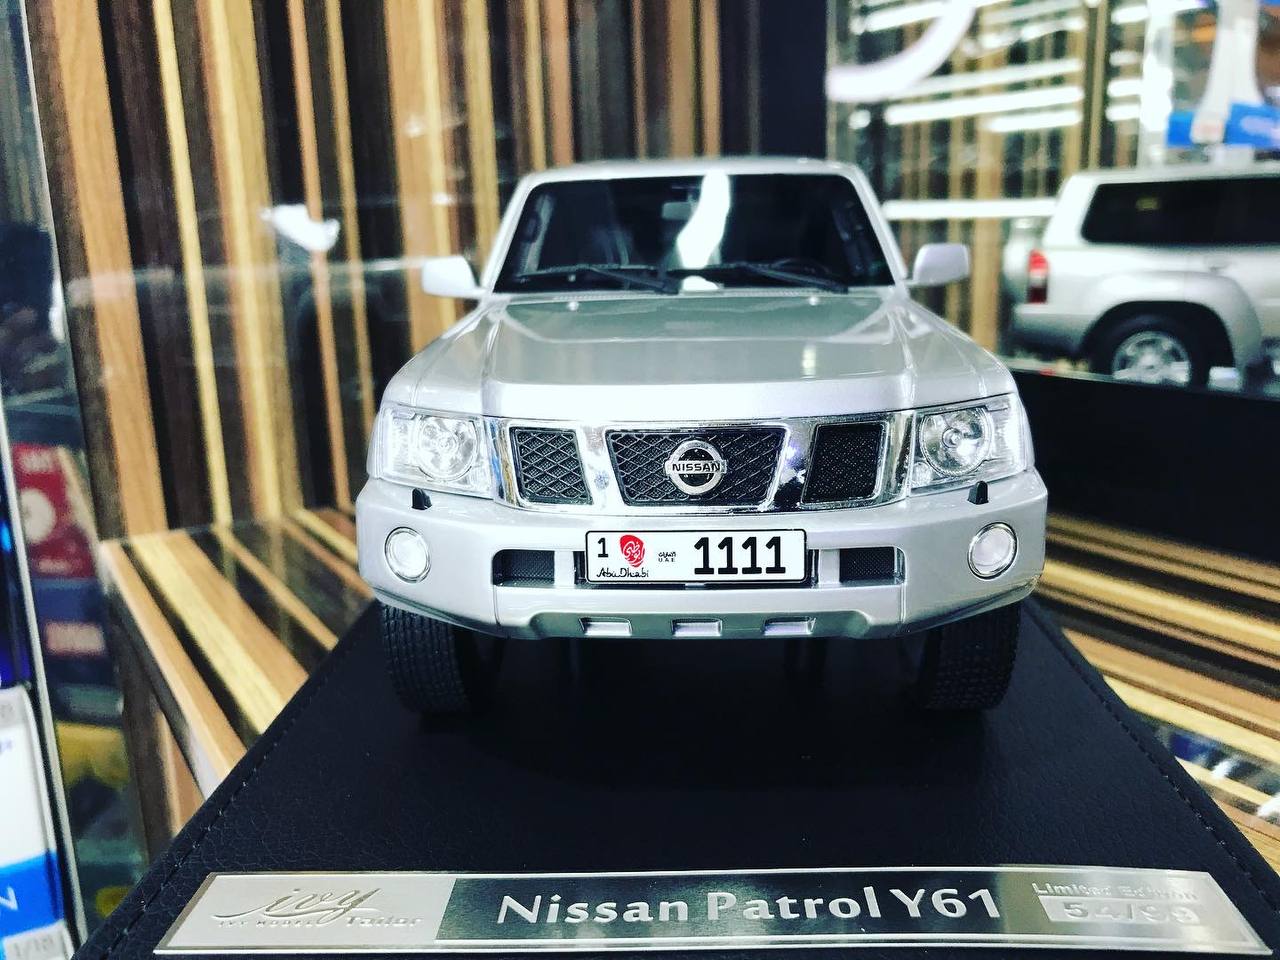 1/18 Diecast Nissan Patrol Safari Silver IVY Models Scale Model Car